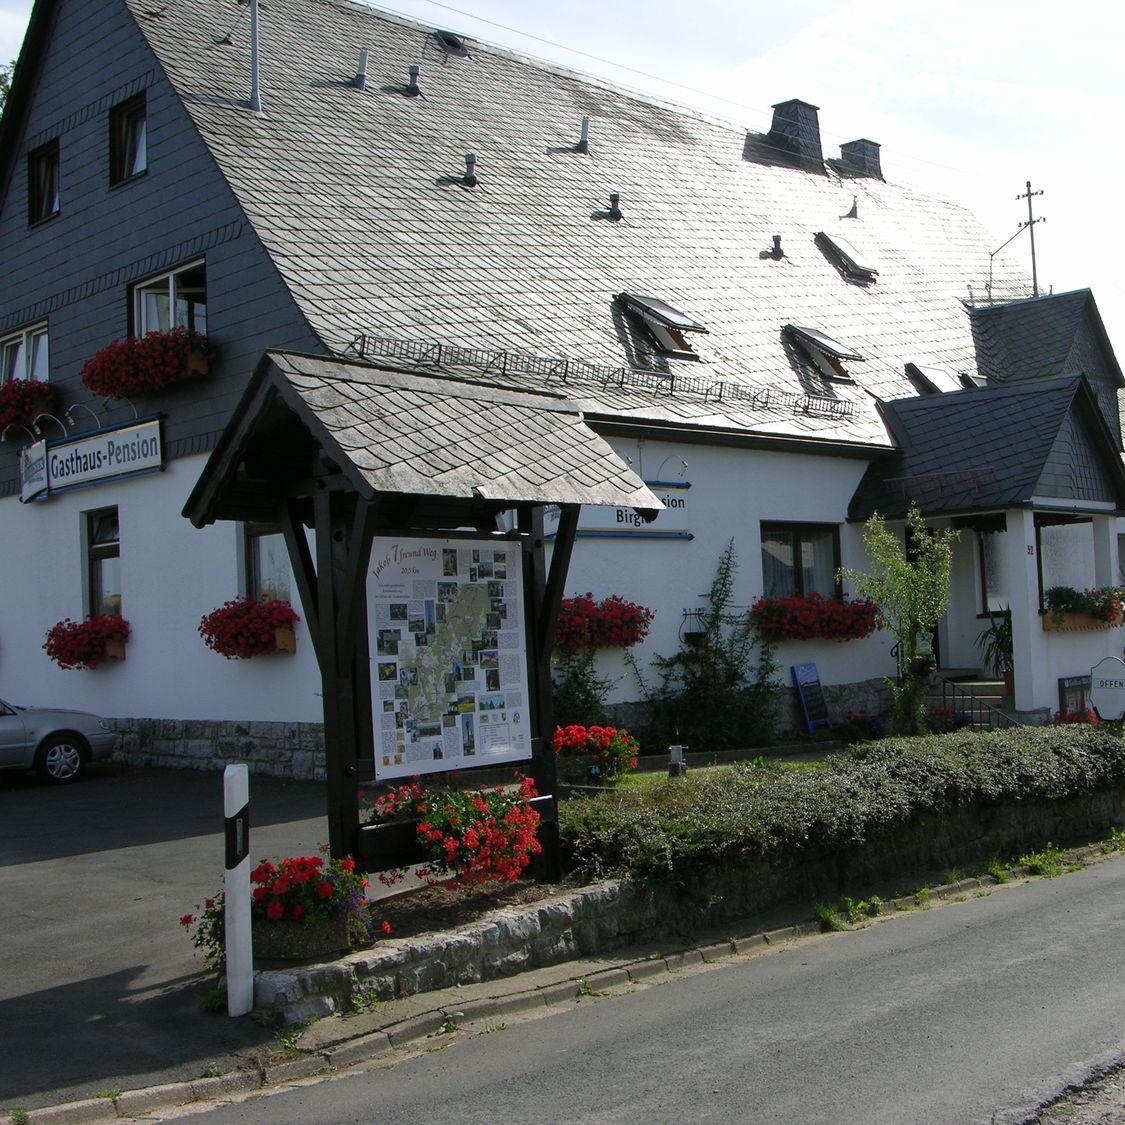 Restaurant "Ferienzimmer.Bayern" in Presseck